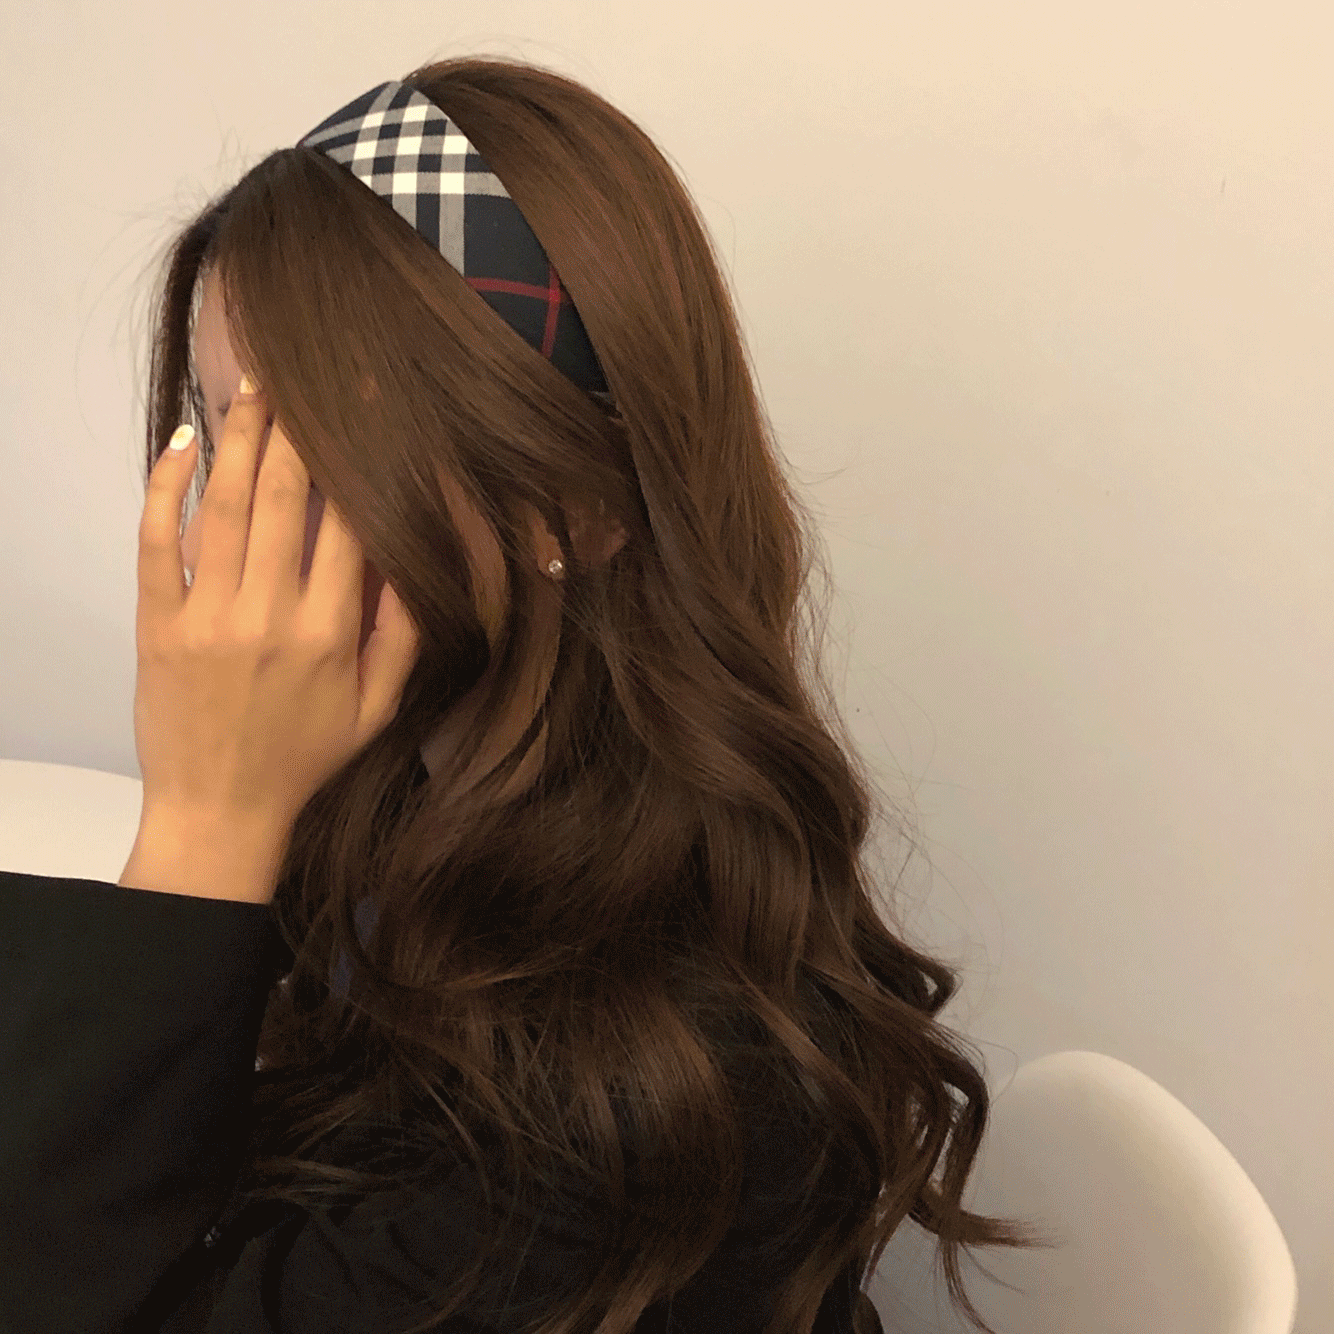 체크 레트로 하이틴 헤어밴드 머리띠 (2color/3size)